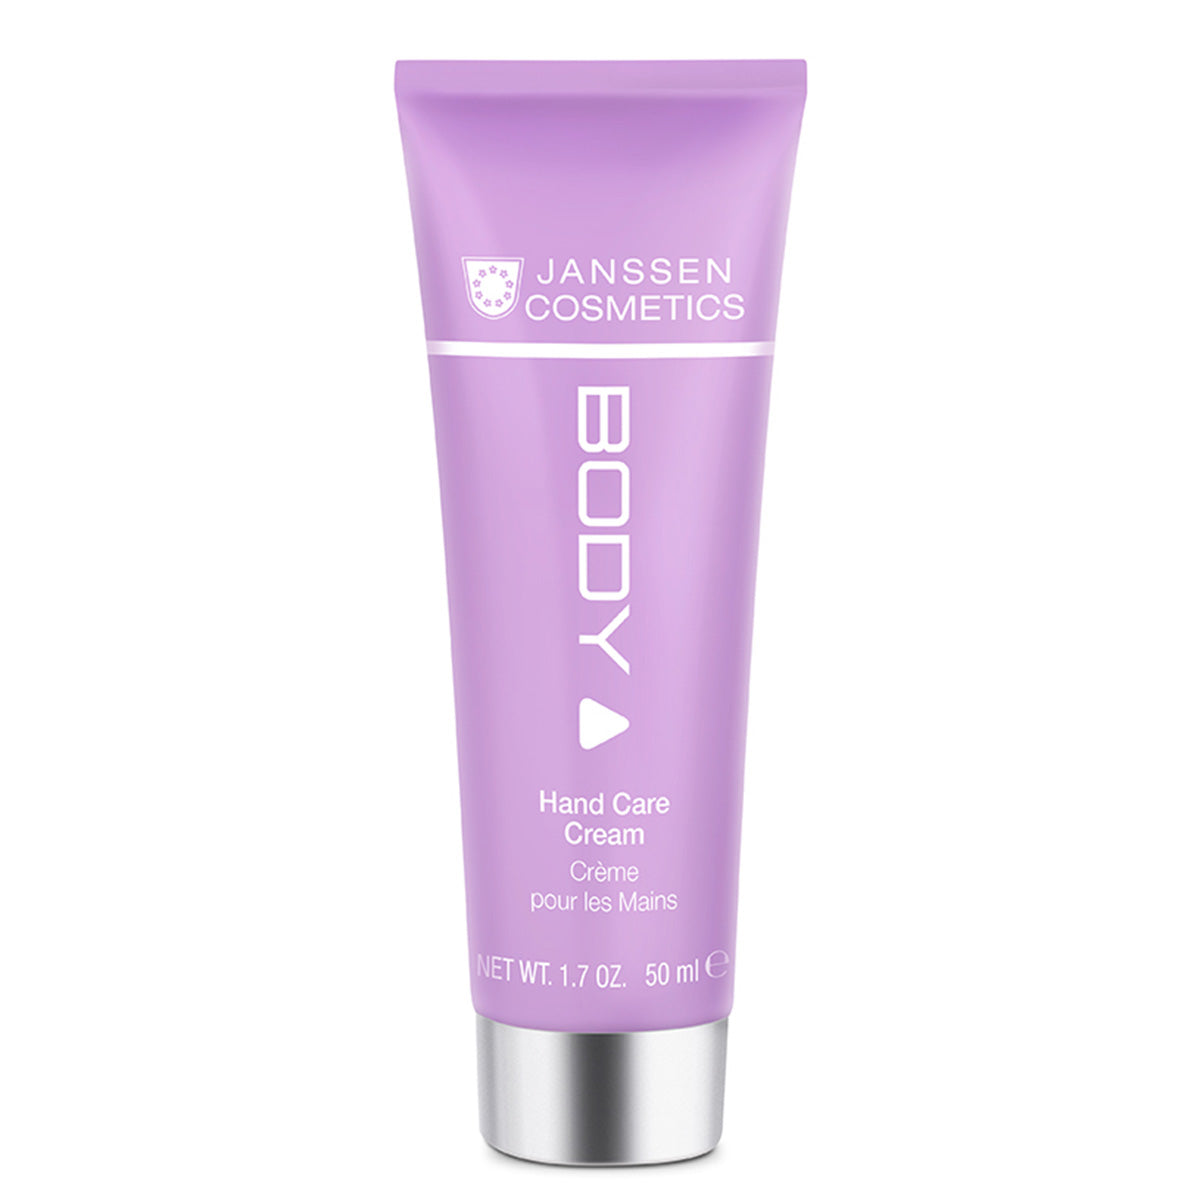 Janssen - Hand Care Cream - 50ml